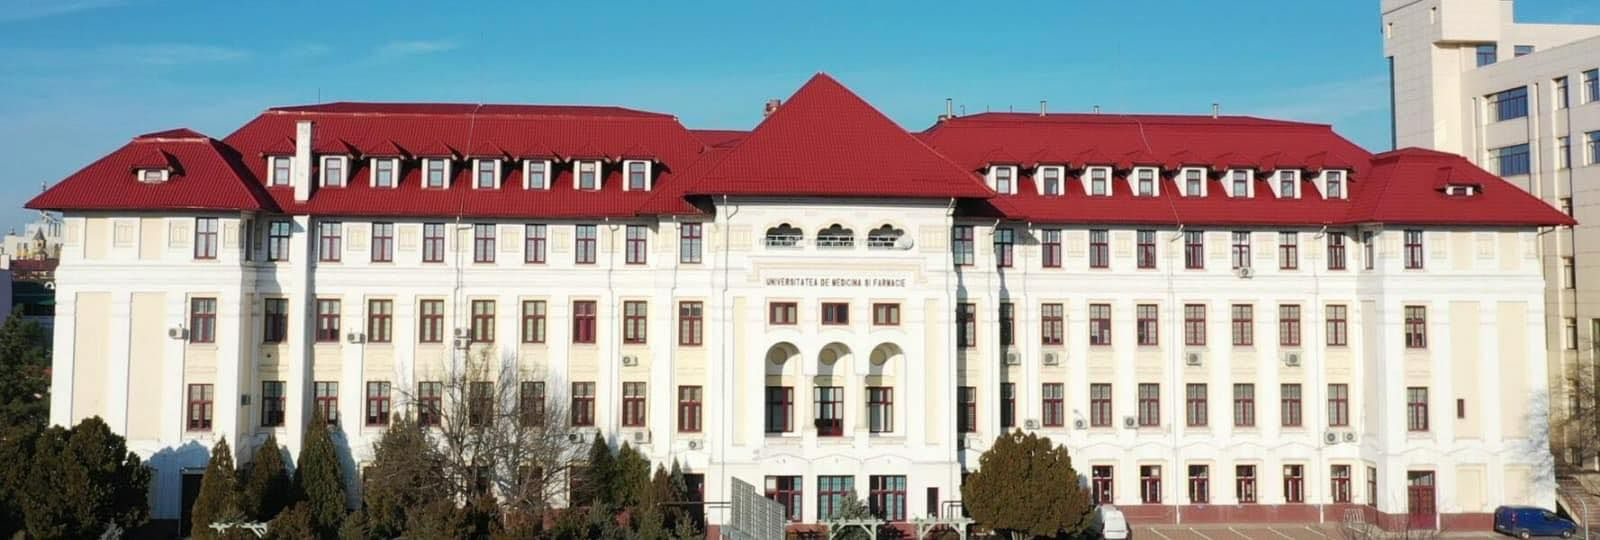 Câte locuri oferă UMF Craiova pentru anul universitar 2022-2023